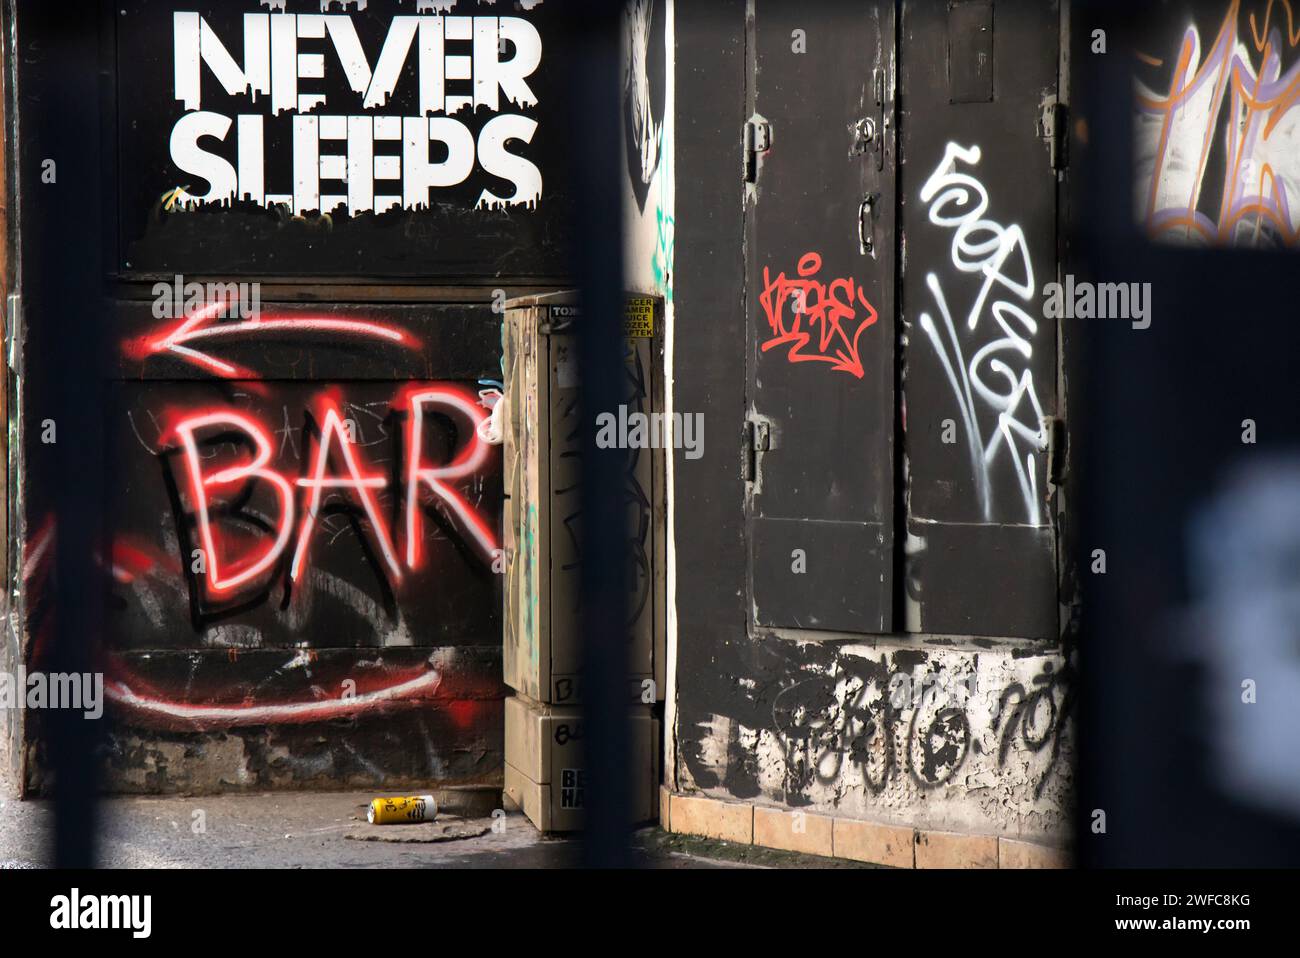 Belgrad, Serbien - 22. Januar 2024: Graffiti-Schild an der Ecke der Stadtpassage, das einen Weg zur Tauchbar im Keller zeigt, die nie schläft Stockfoto